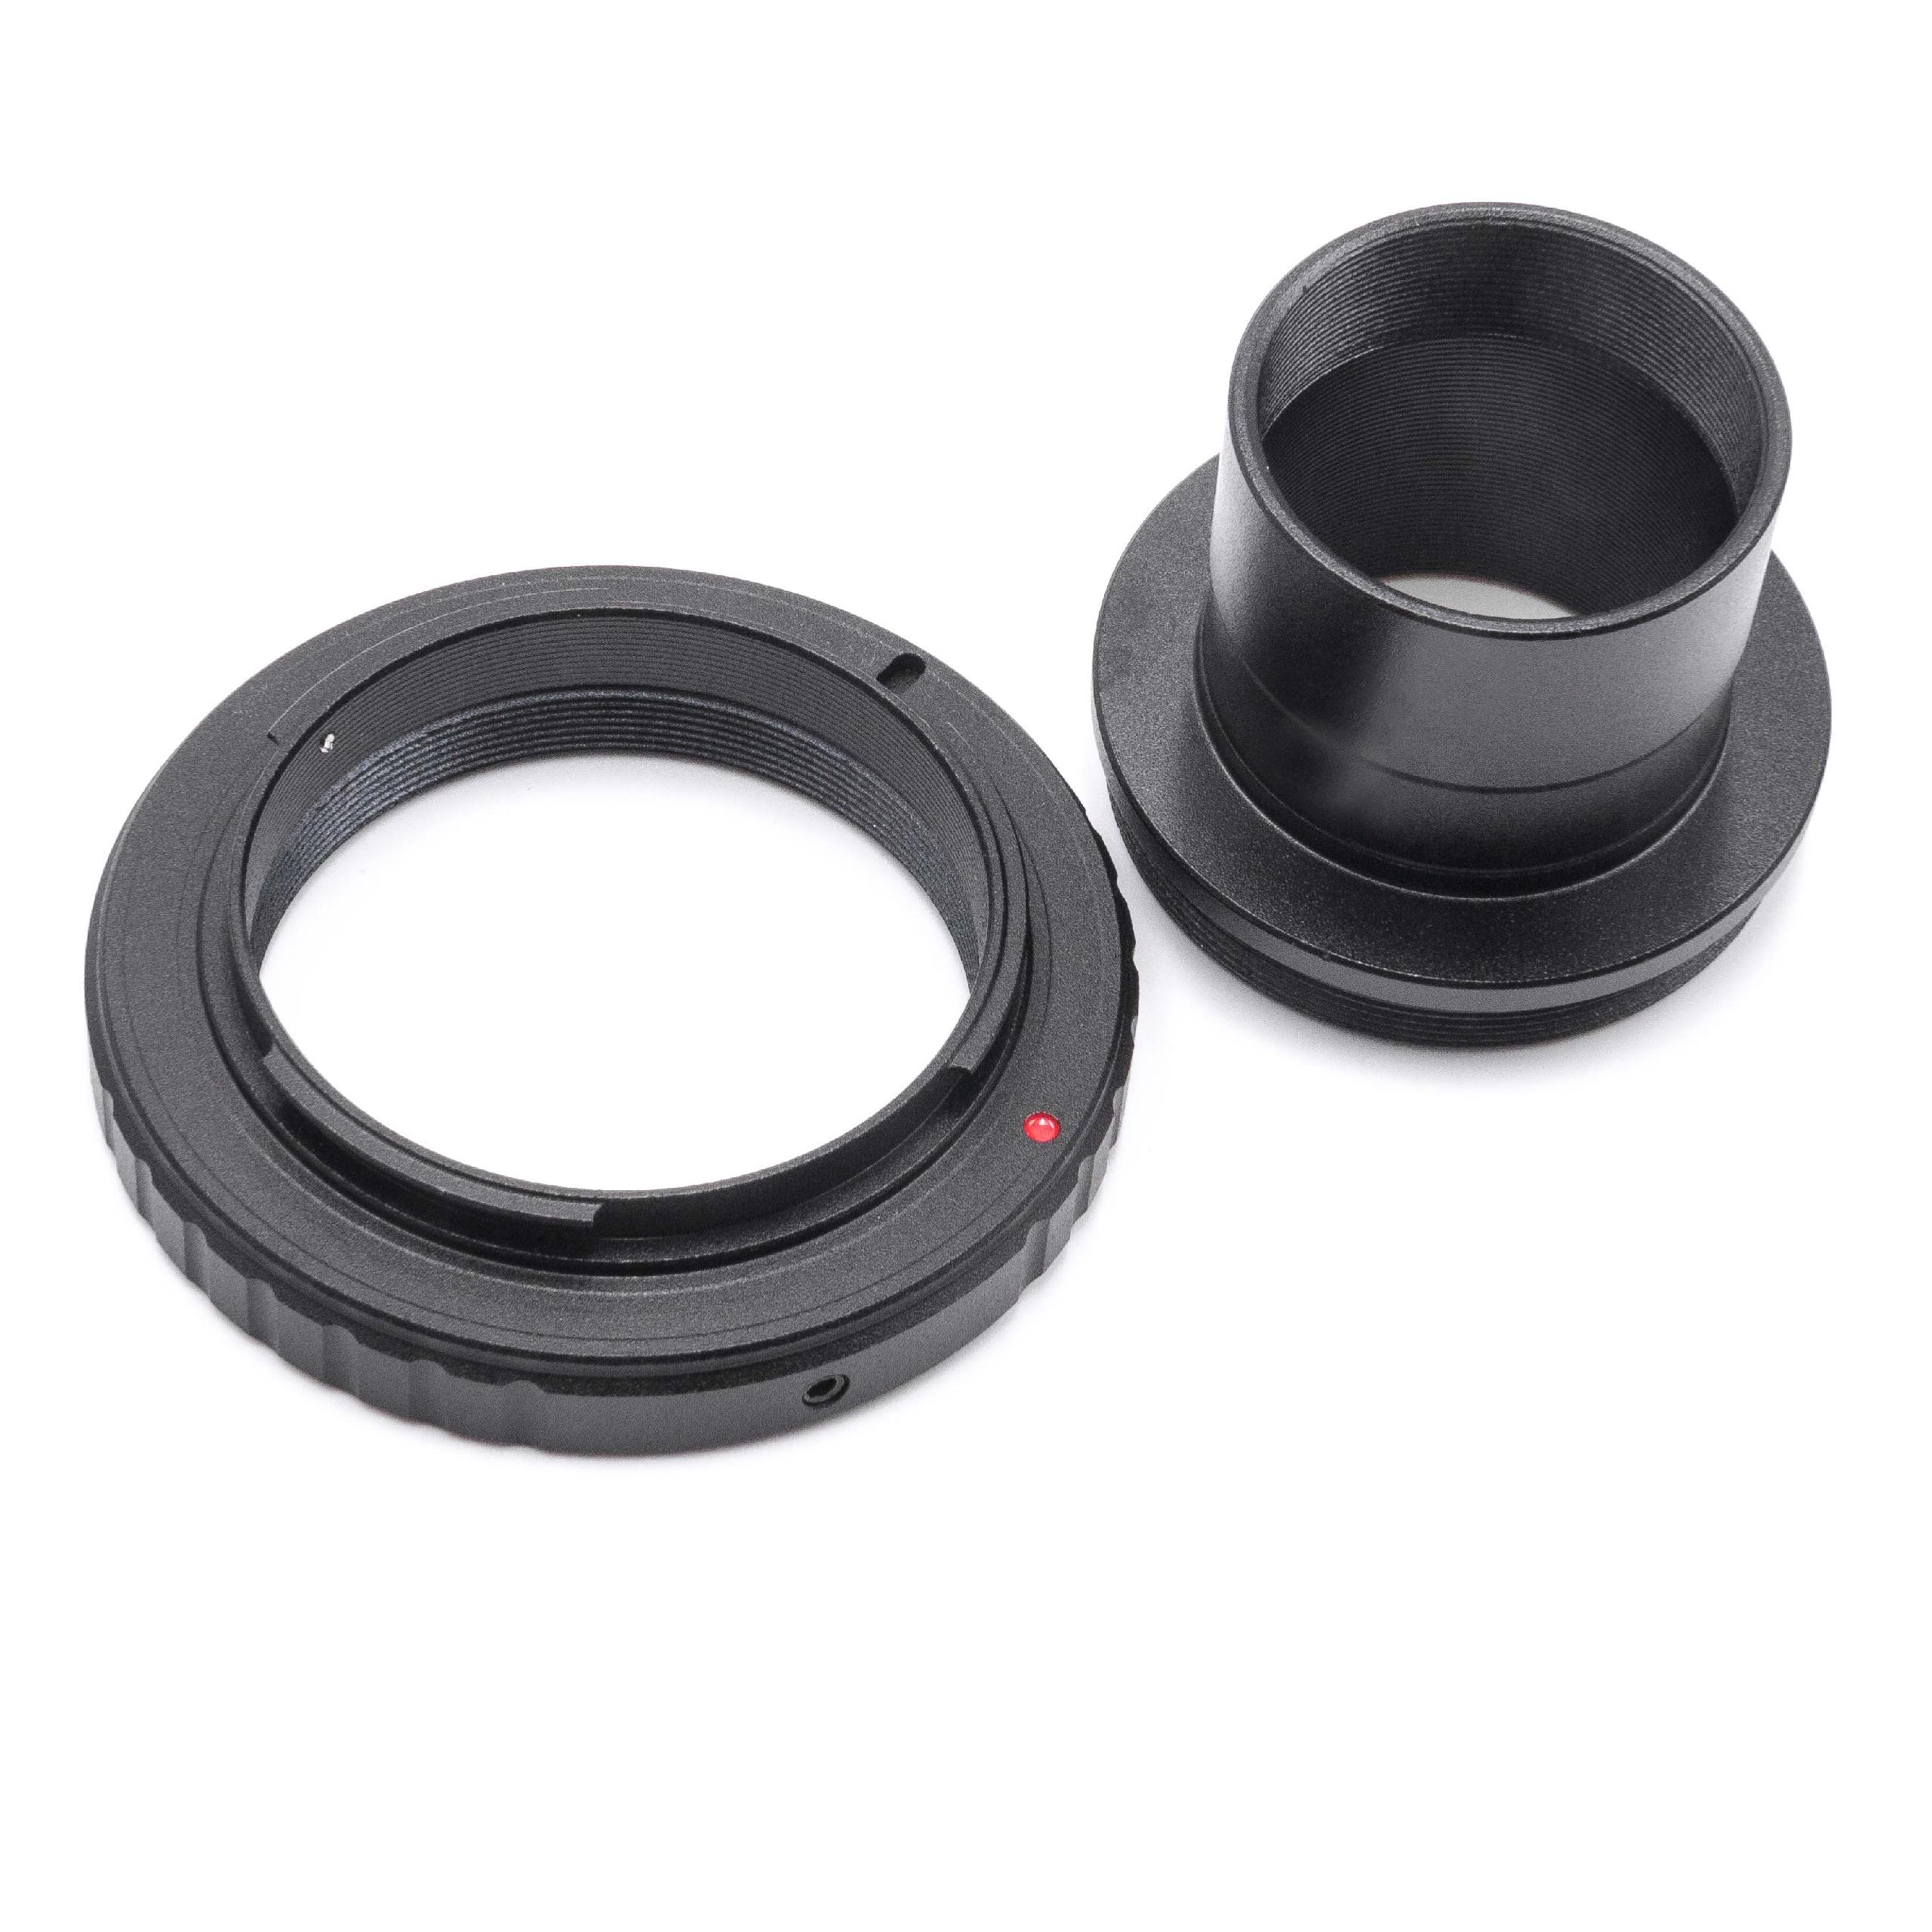 2x Anello adattatore, adattatore T2, anello per obiettivi 1,25" - M42 x 075" per Nikon D50 telescopi, fotocame